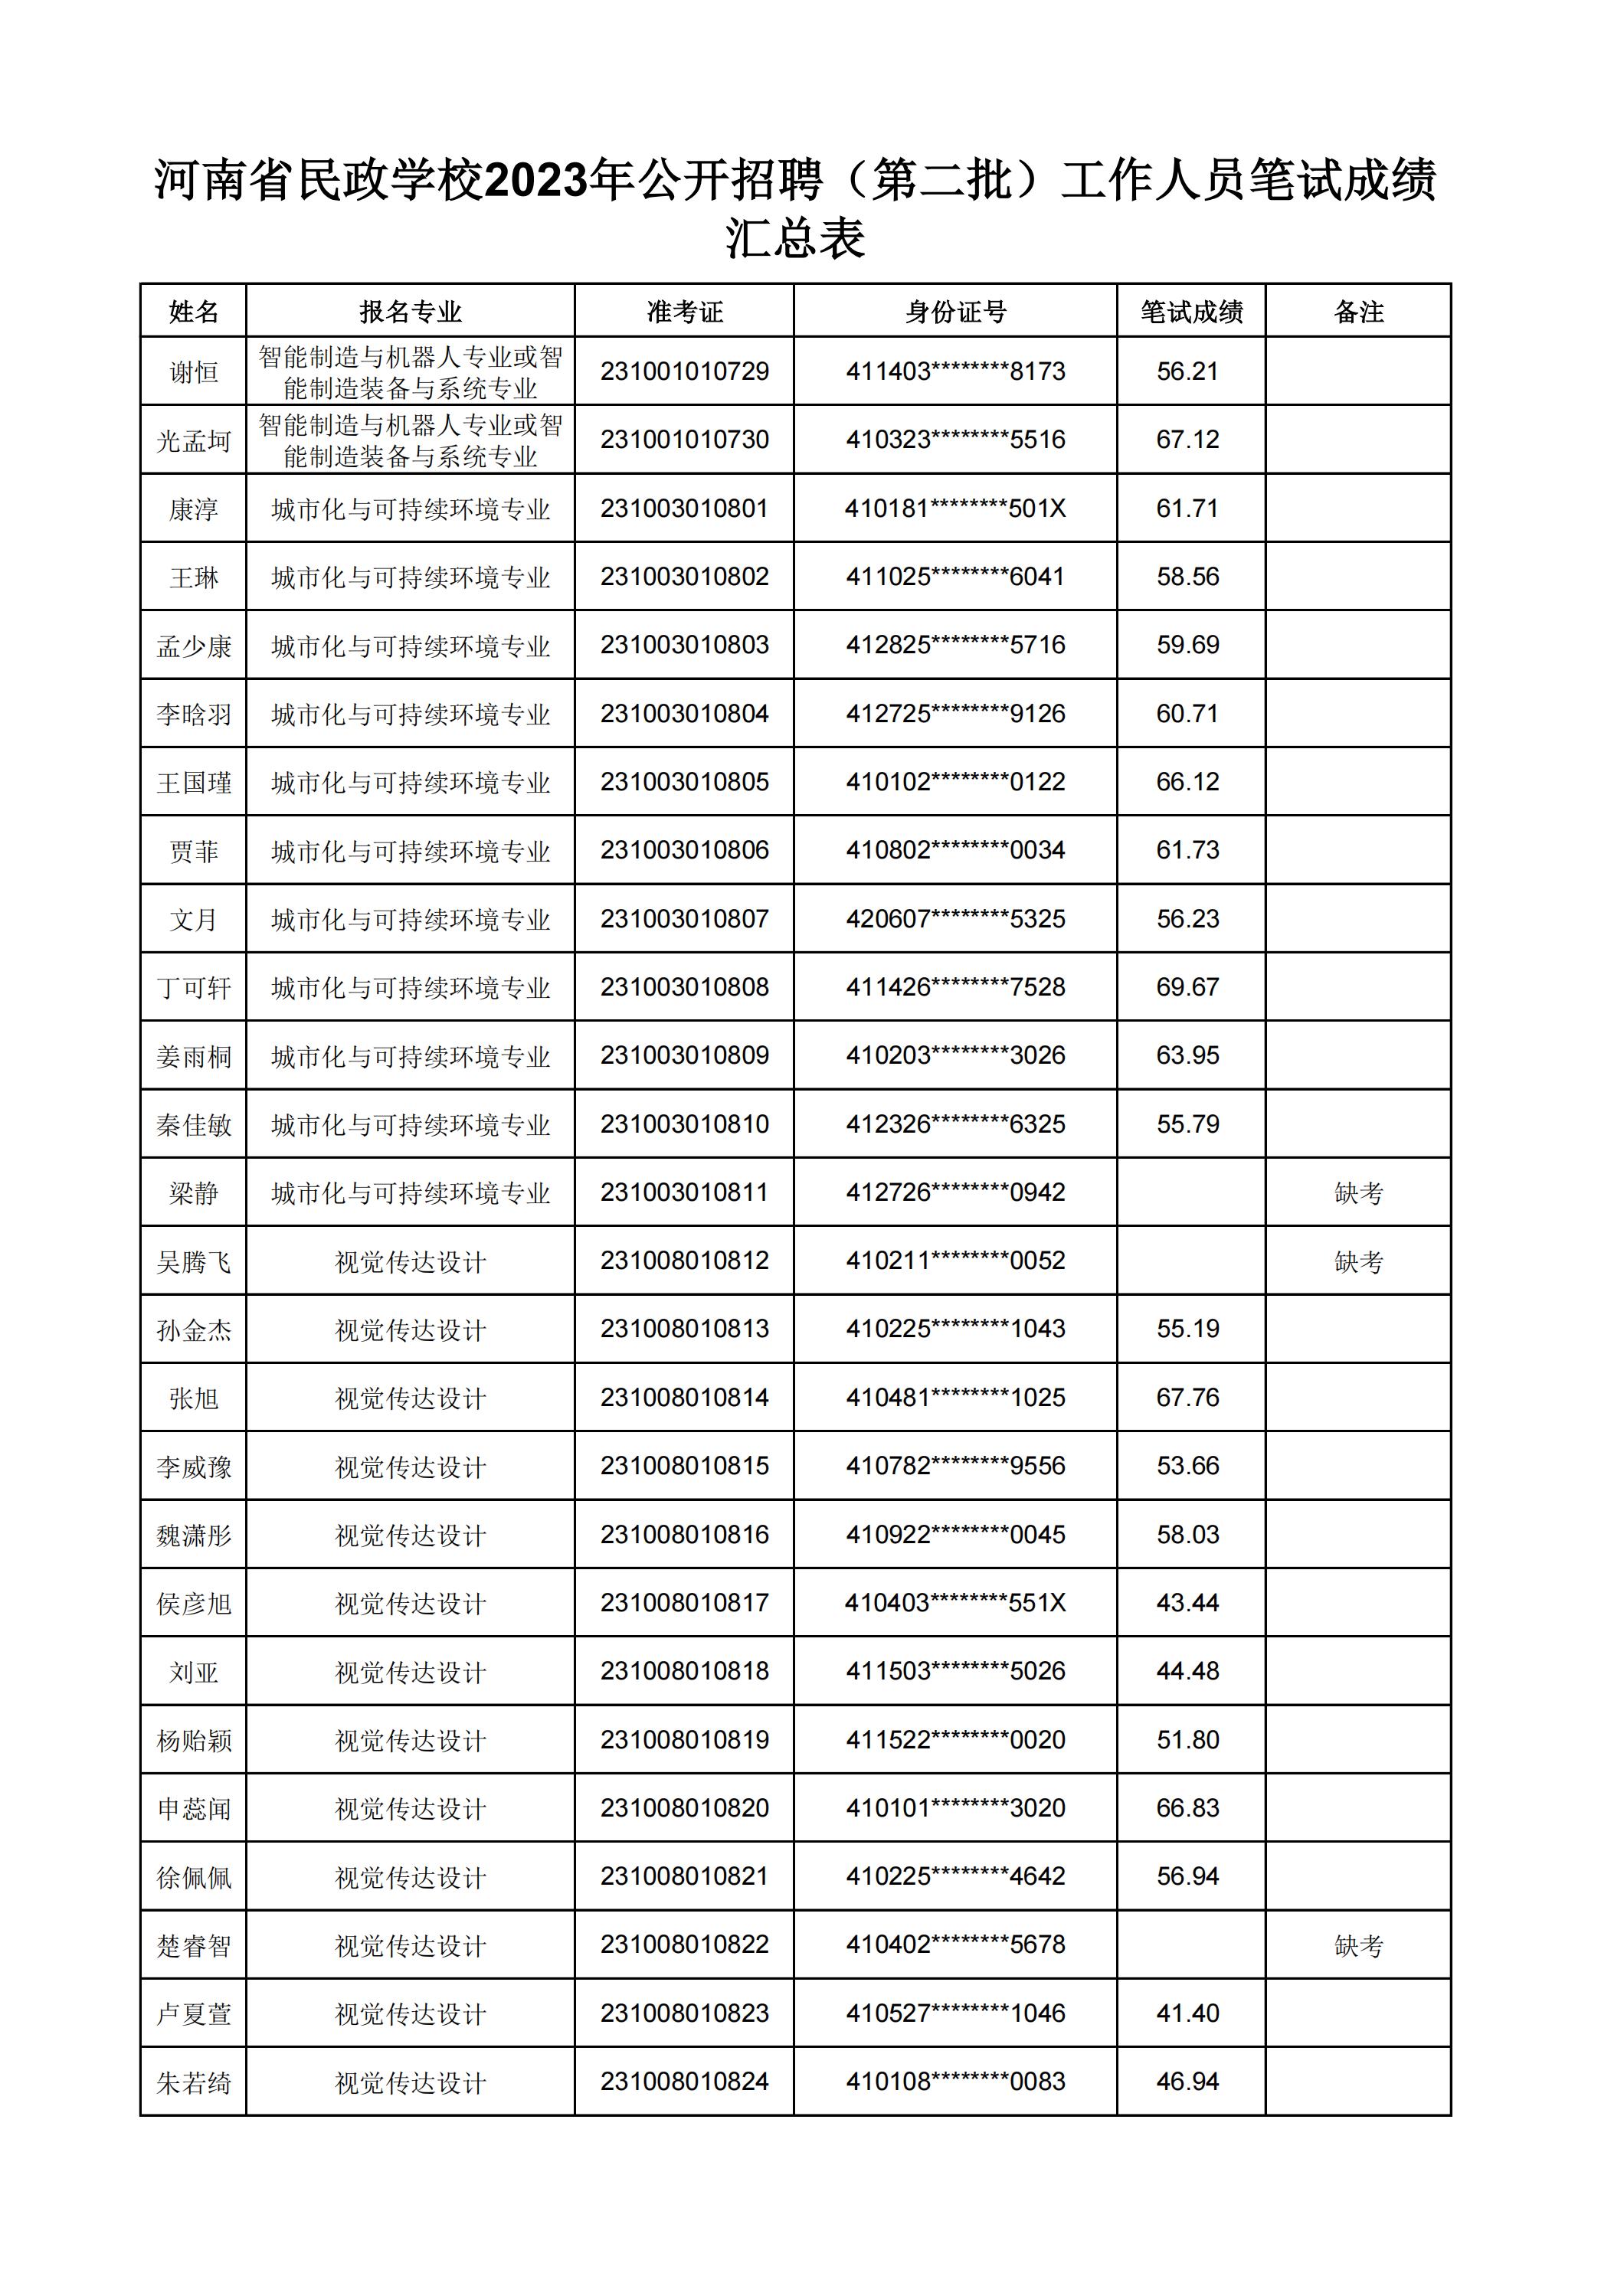 河南省民政学校2023年公开招聘（第二批）工作人员笔试成绩汇总表(2)_08.jpg